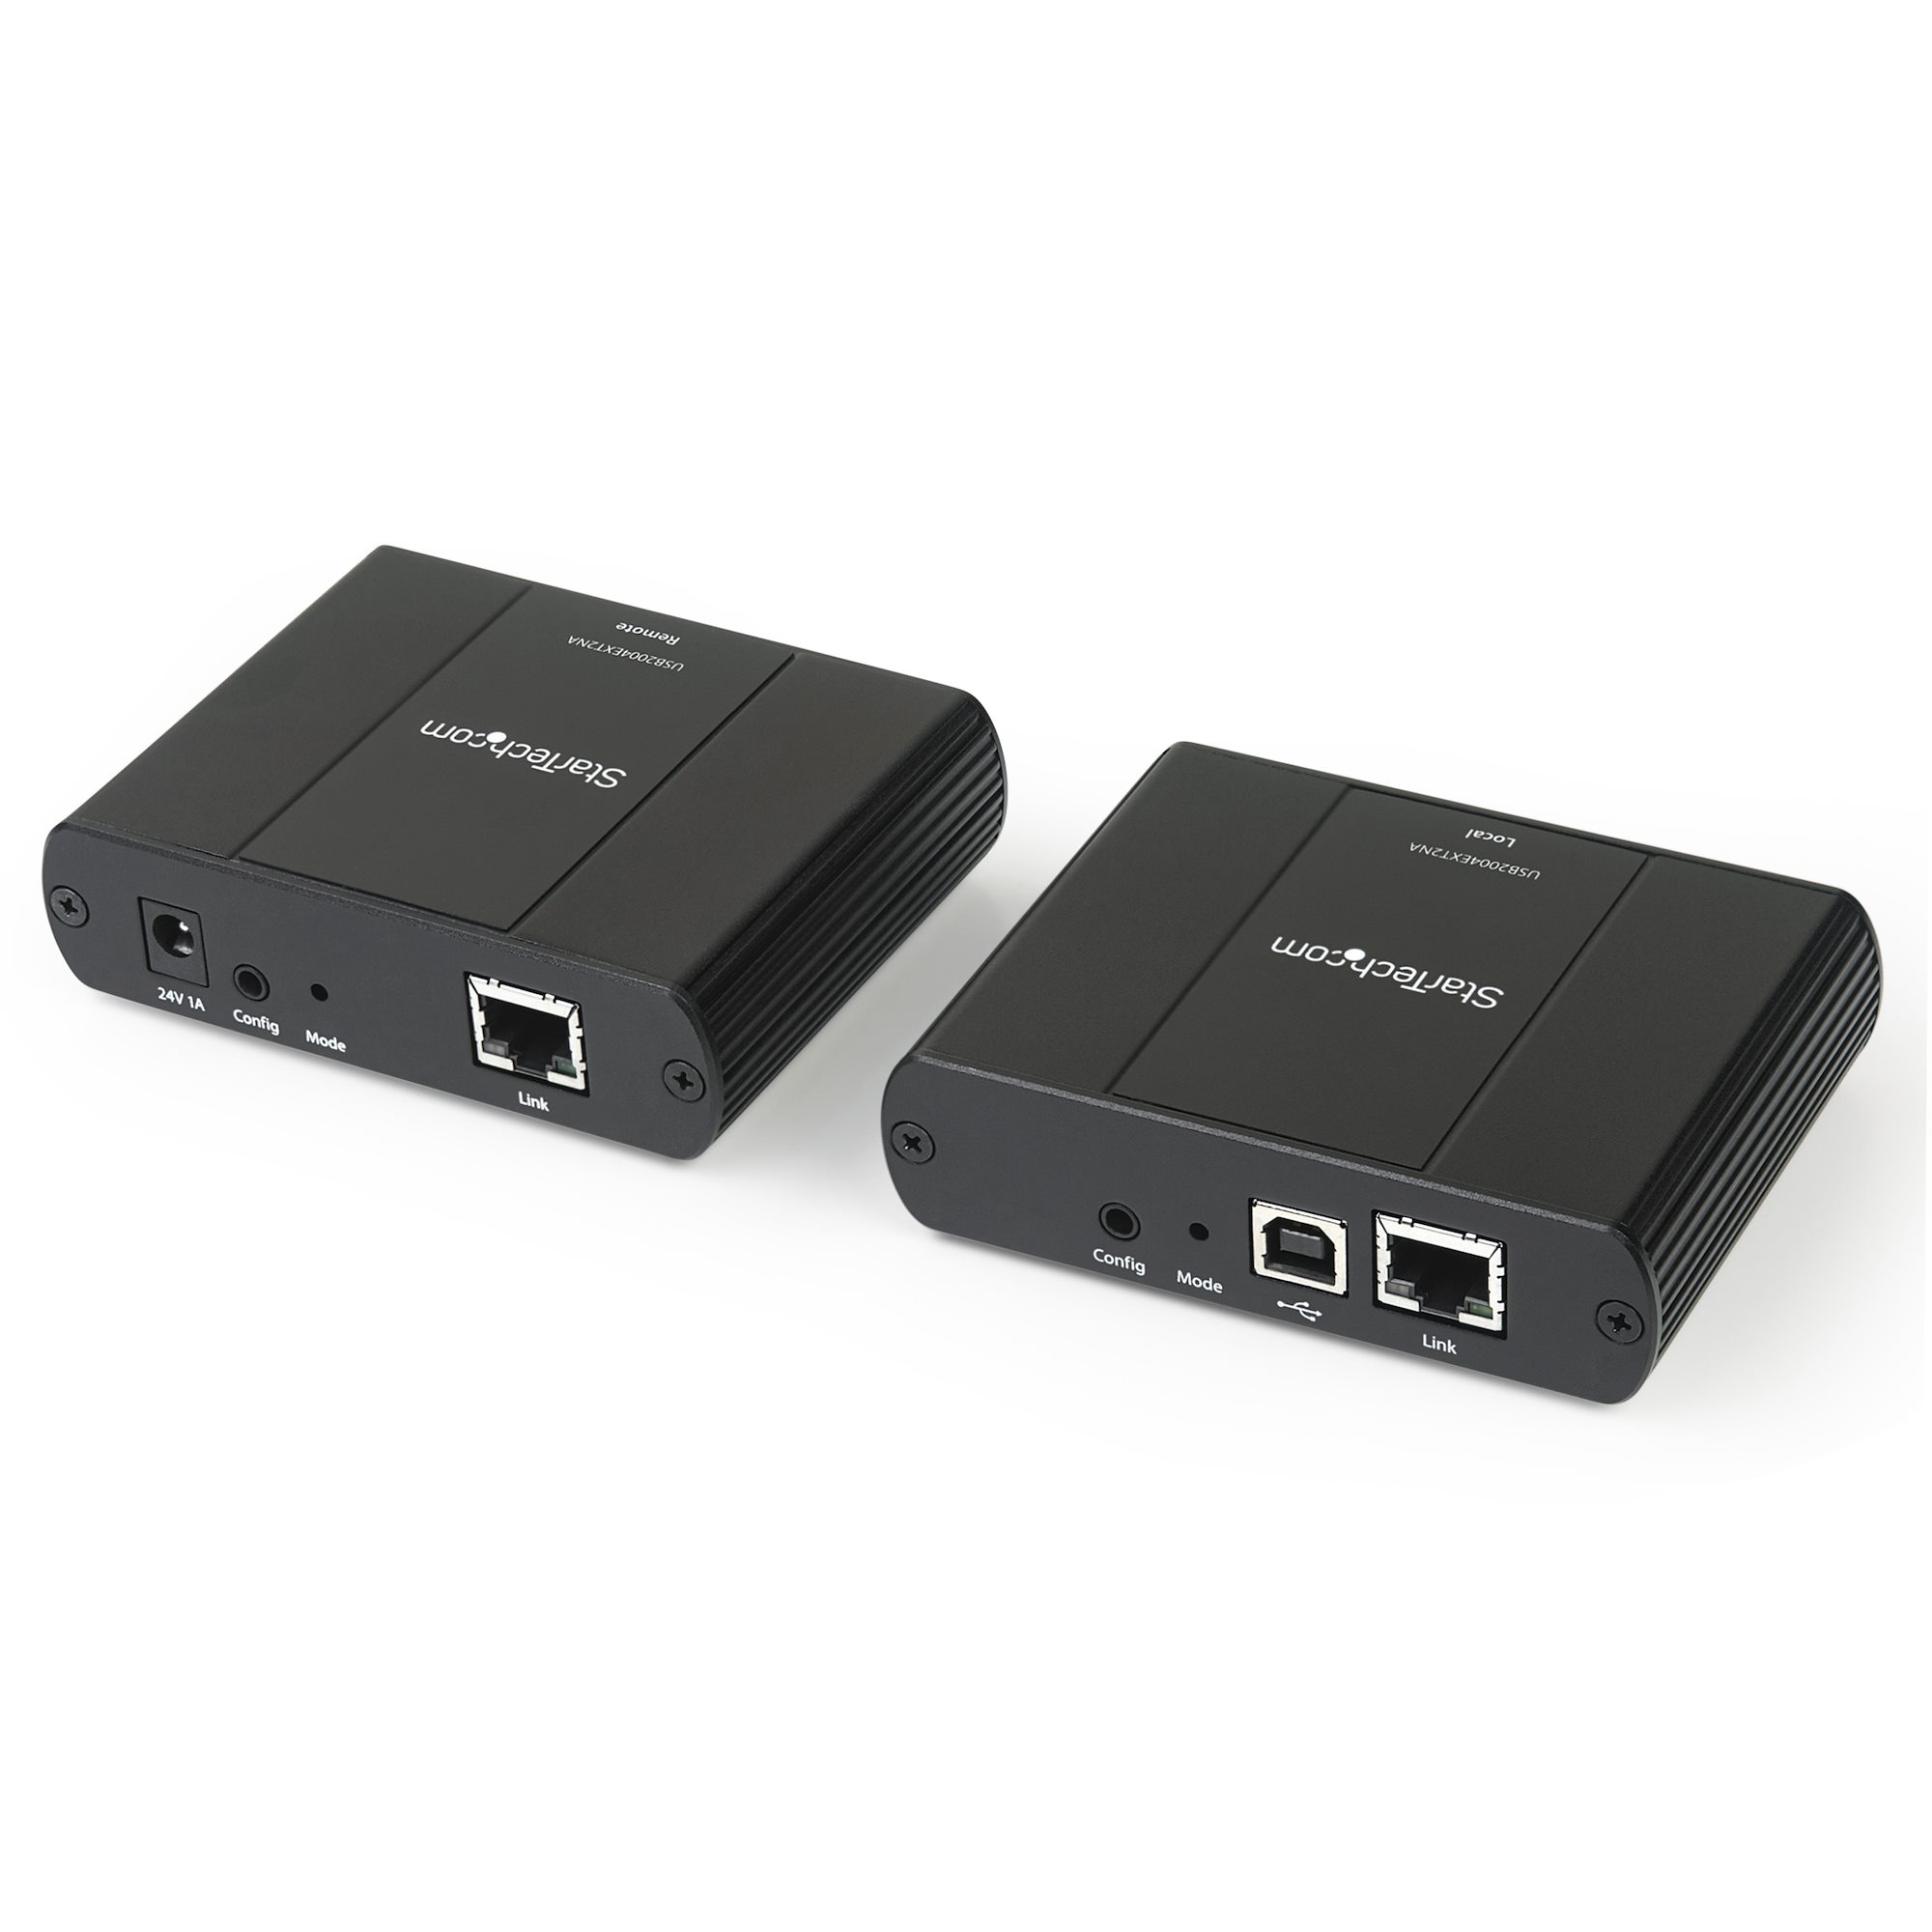 af os selv ego 4 Port USB 2.0 Extender Hub over Cat5e/6 - USB Extenders | StarTech.com